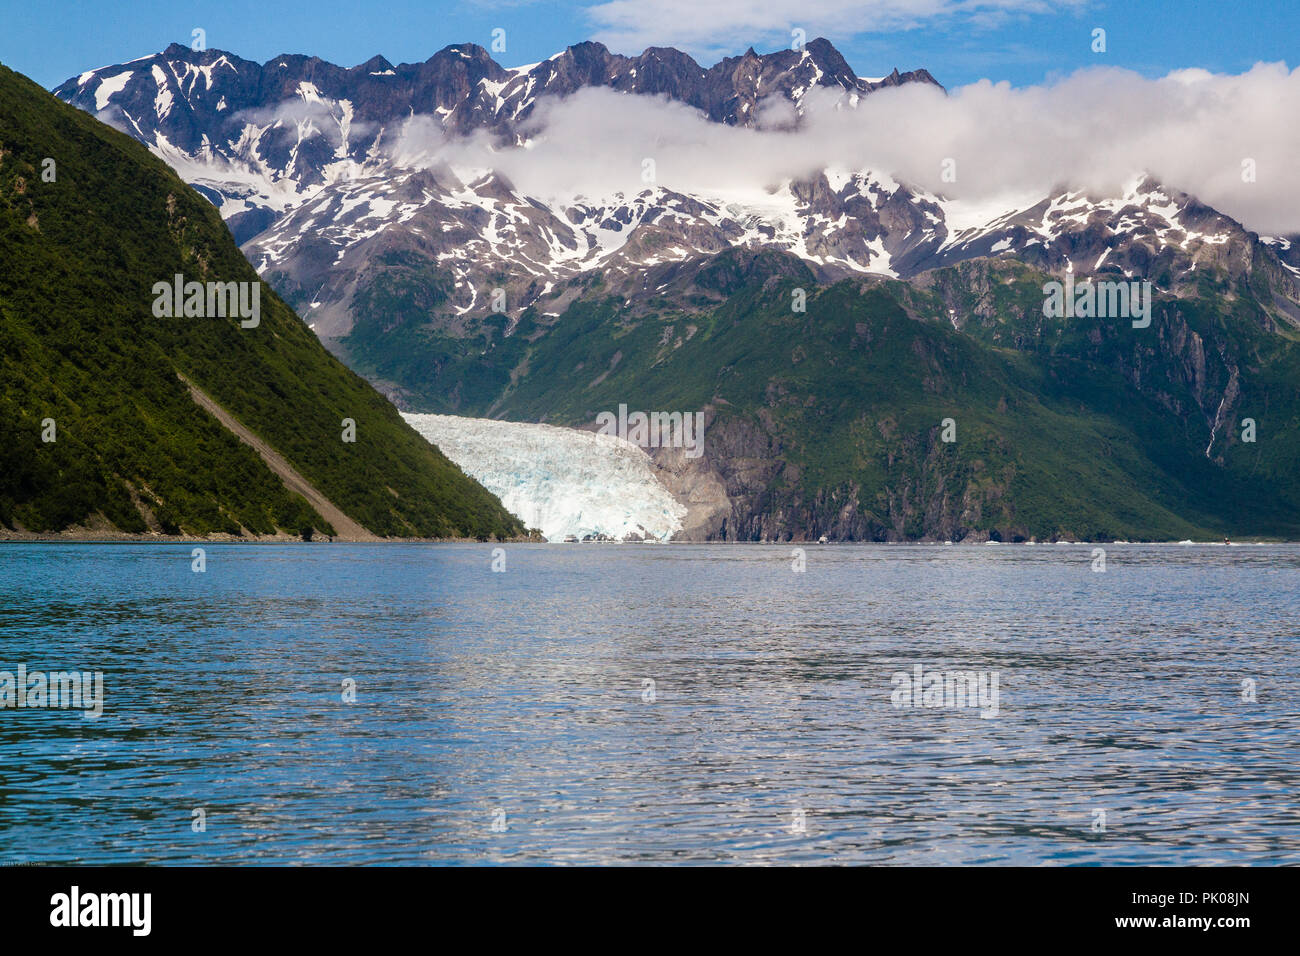 Vista del ghiacciaio Aialik nella baia di Aialik, Alaska, Stati Uniti d'America. Acqua in primo piano, montagna verde a sinistra del ghiacciaio, neve sulla montagna a destra, cielo blu. Foto Stock